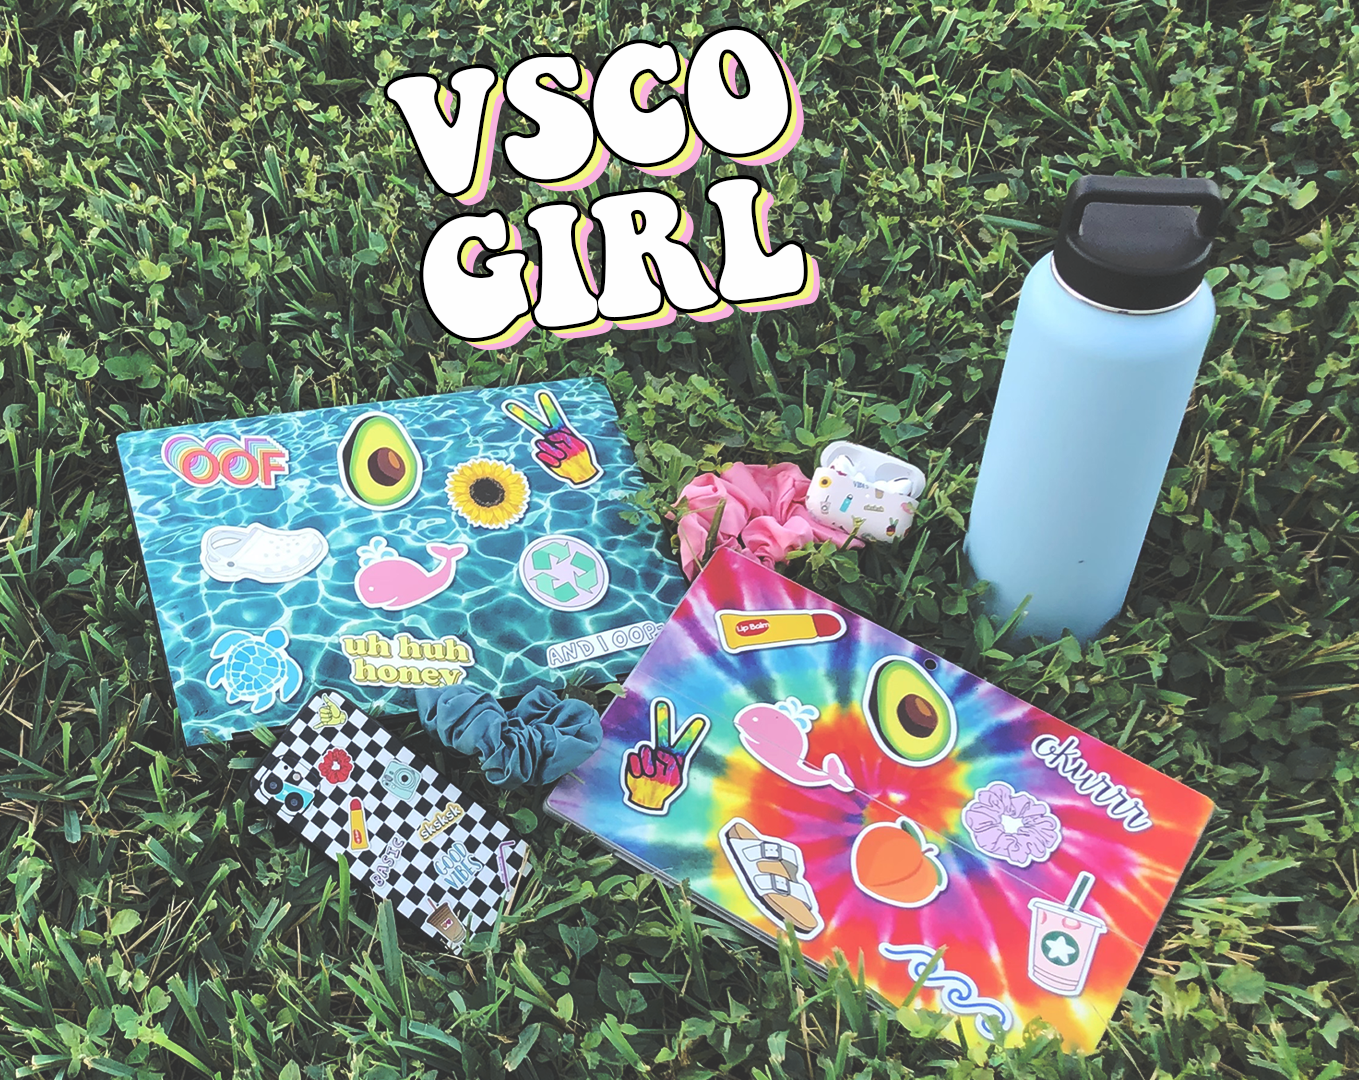 VSCO Girl Skin Designs Make Your Tech Go “Sksksk”